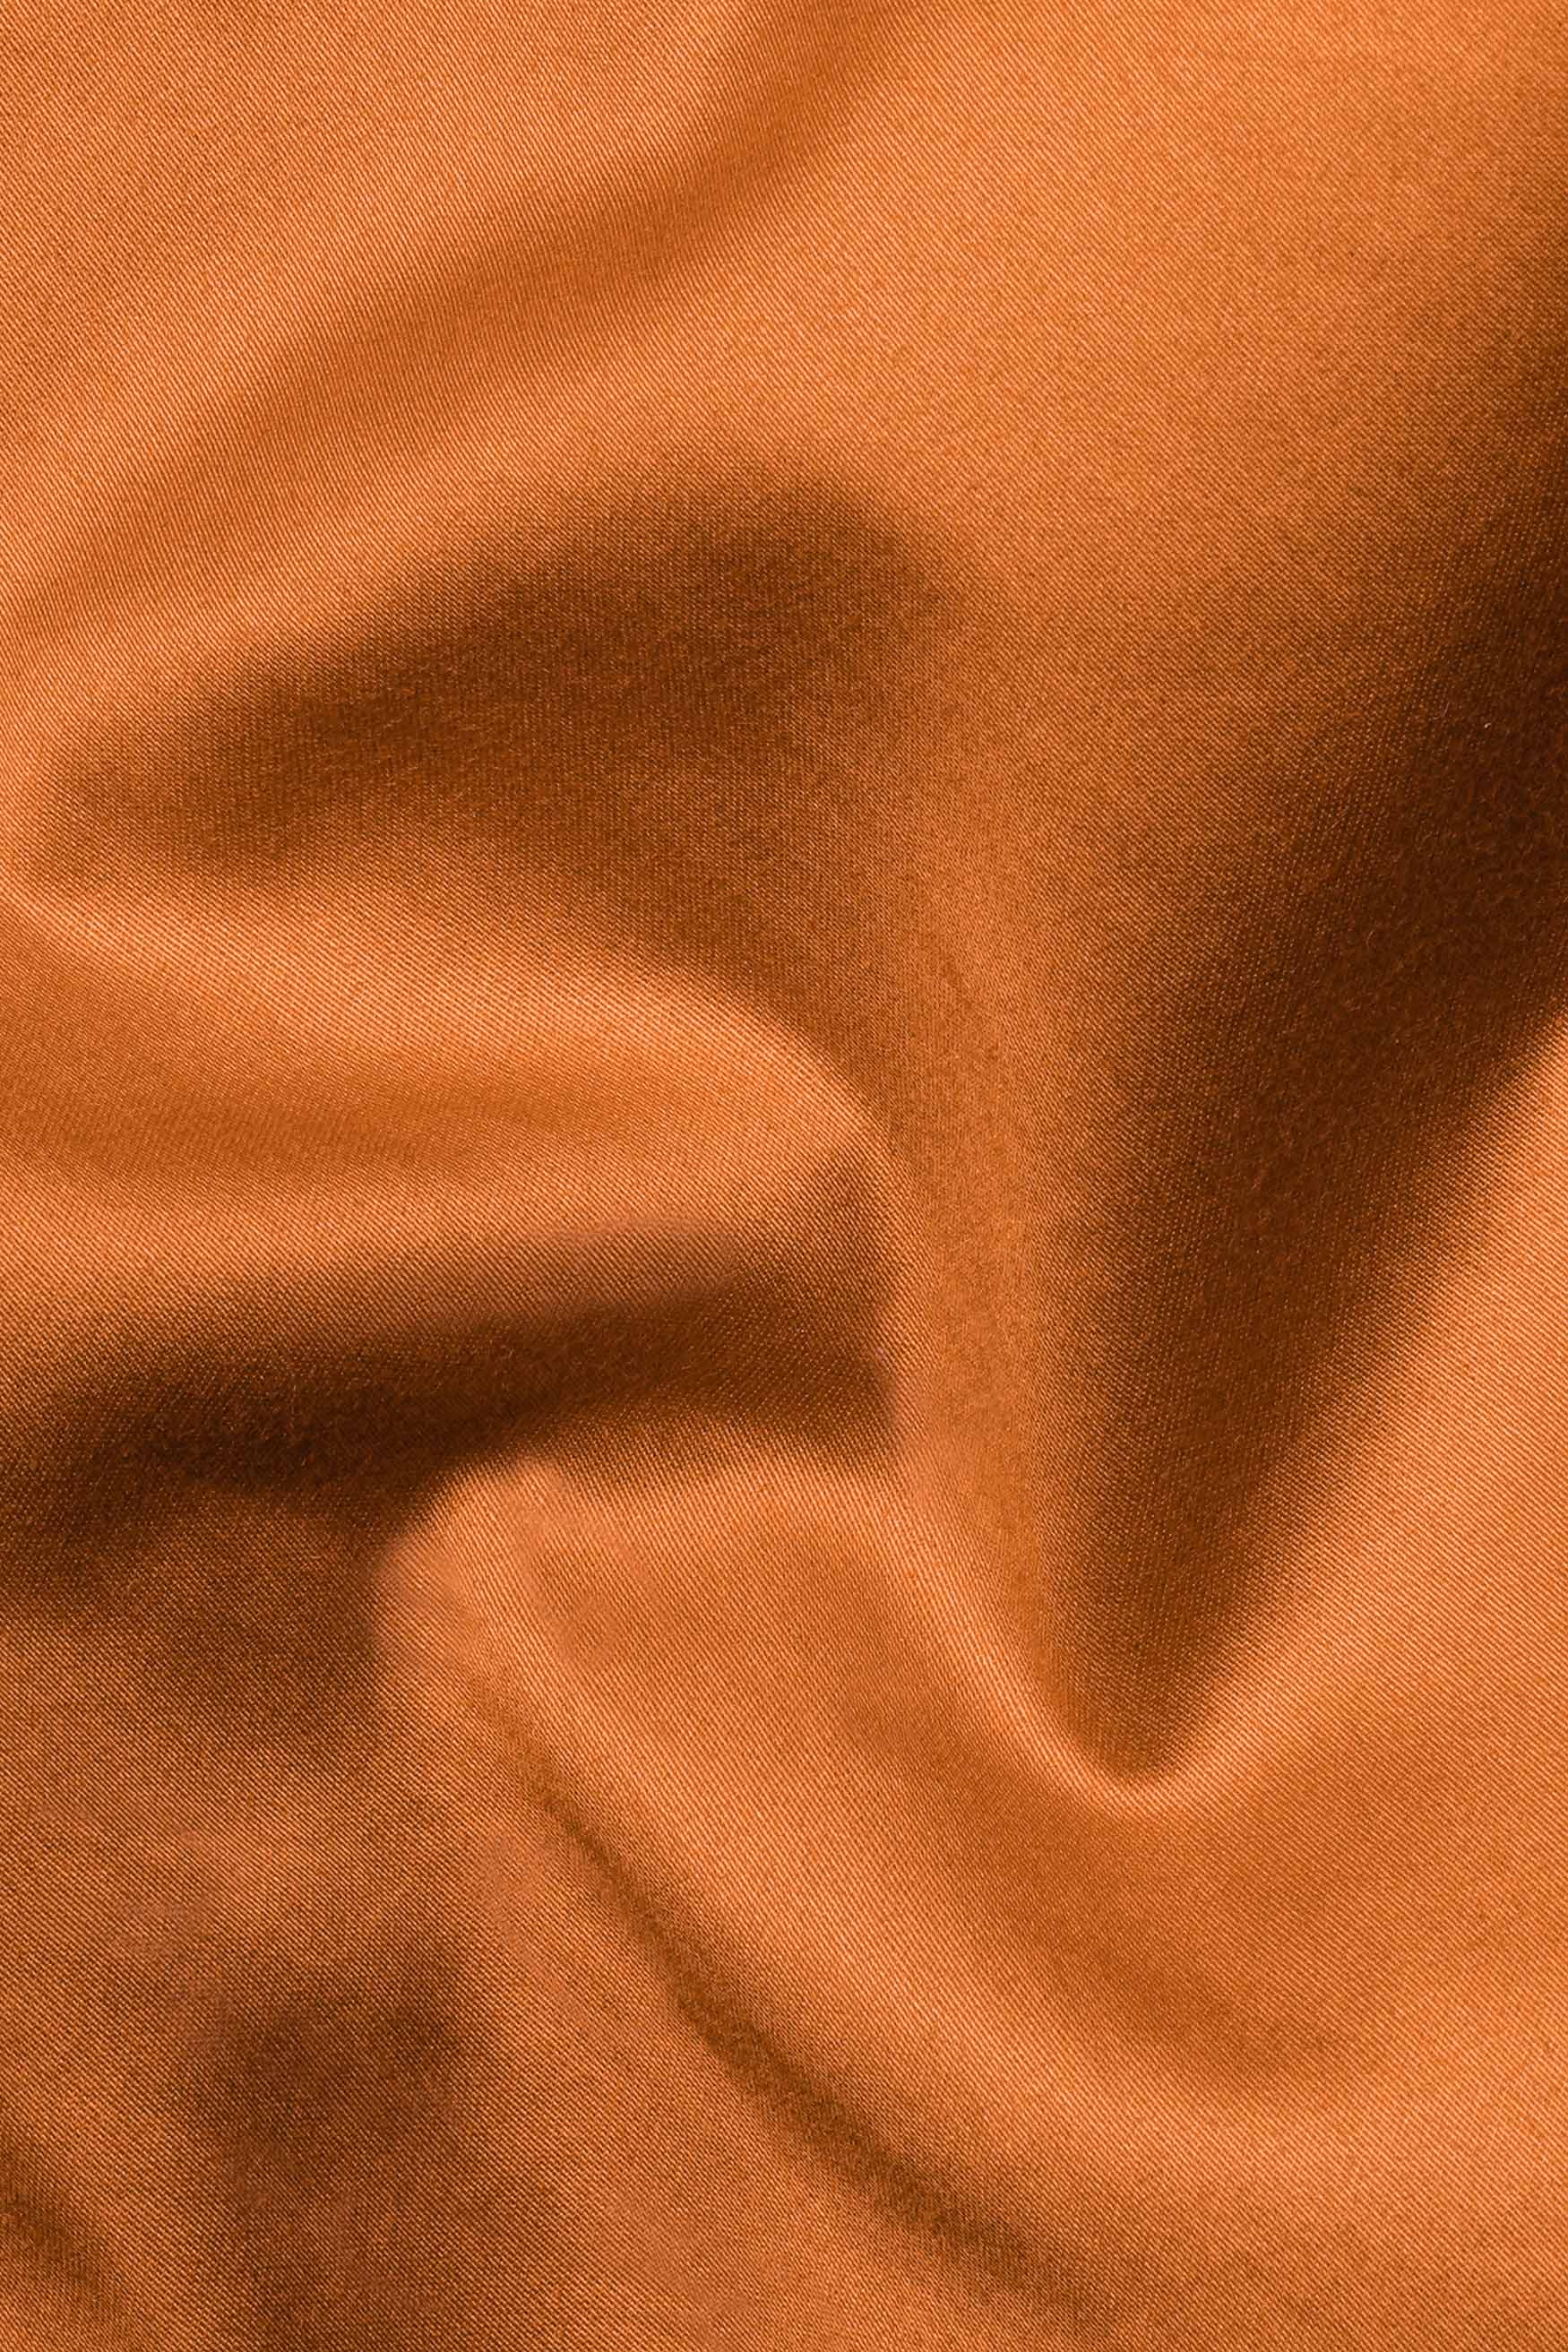 Raw Sienna Orange Subtle Sheen Super Soft Premium Cotton Tuxedo Shirt